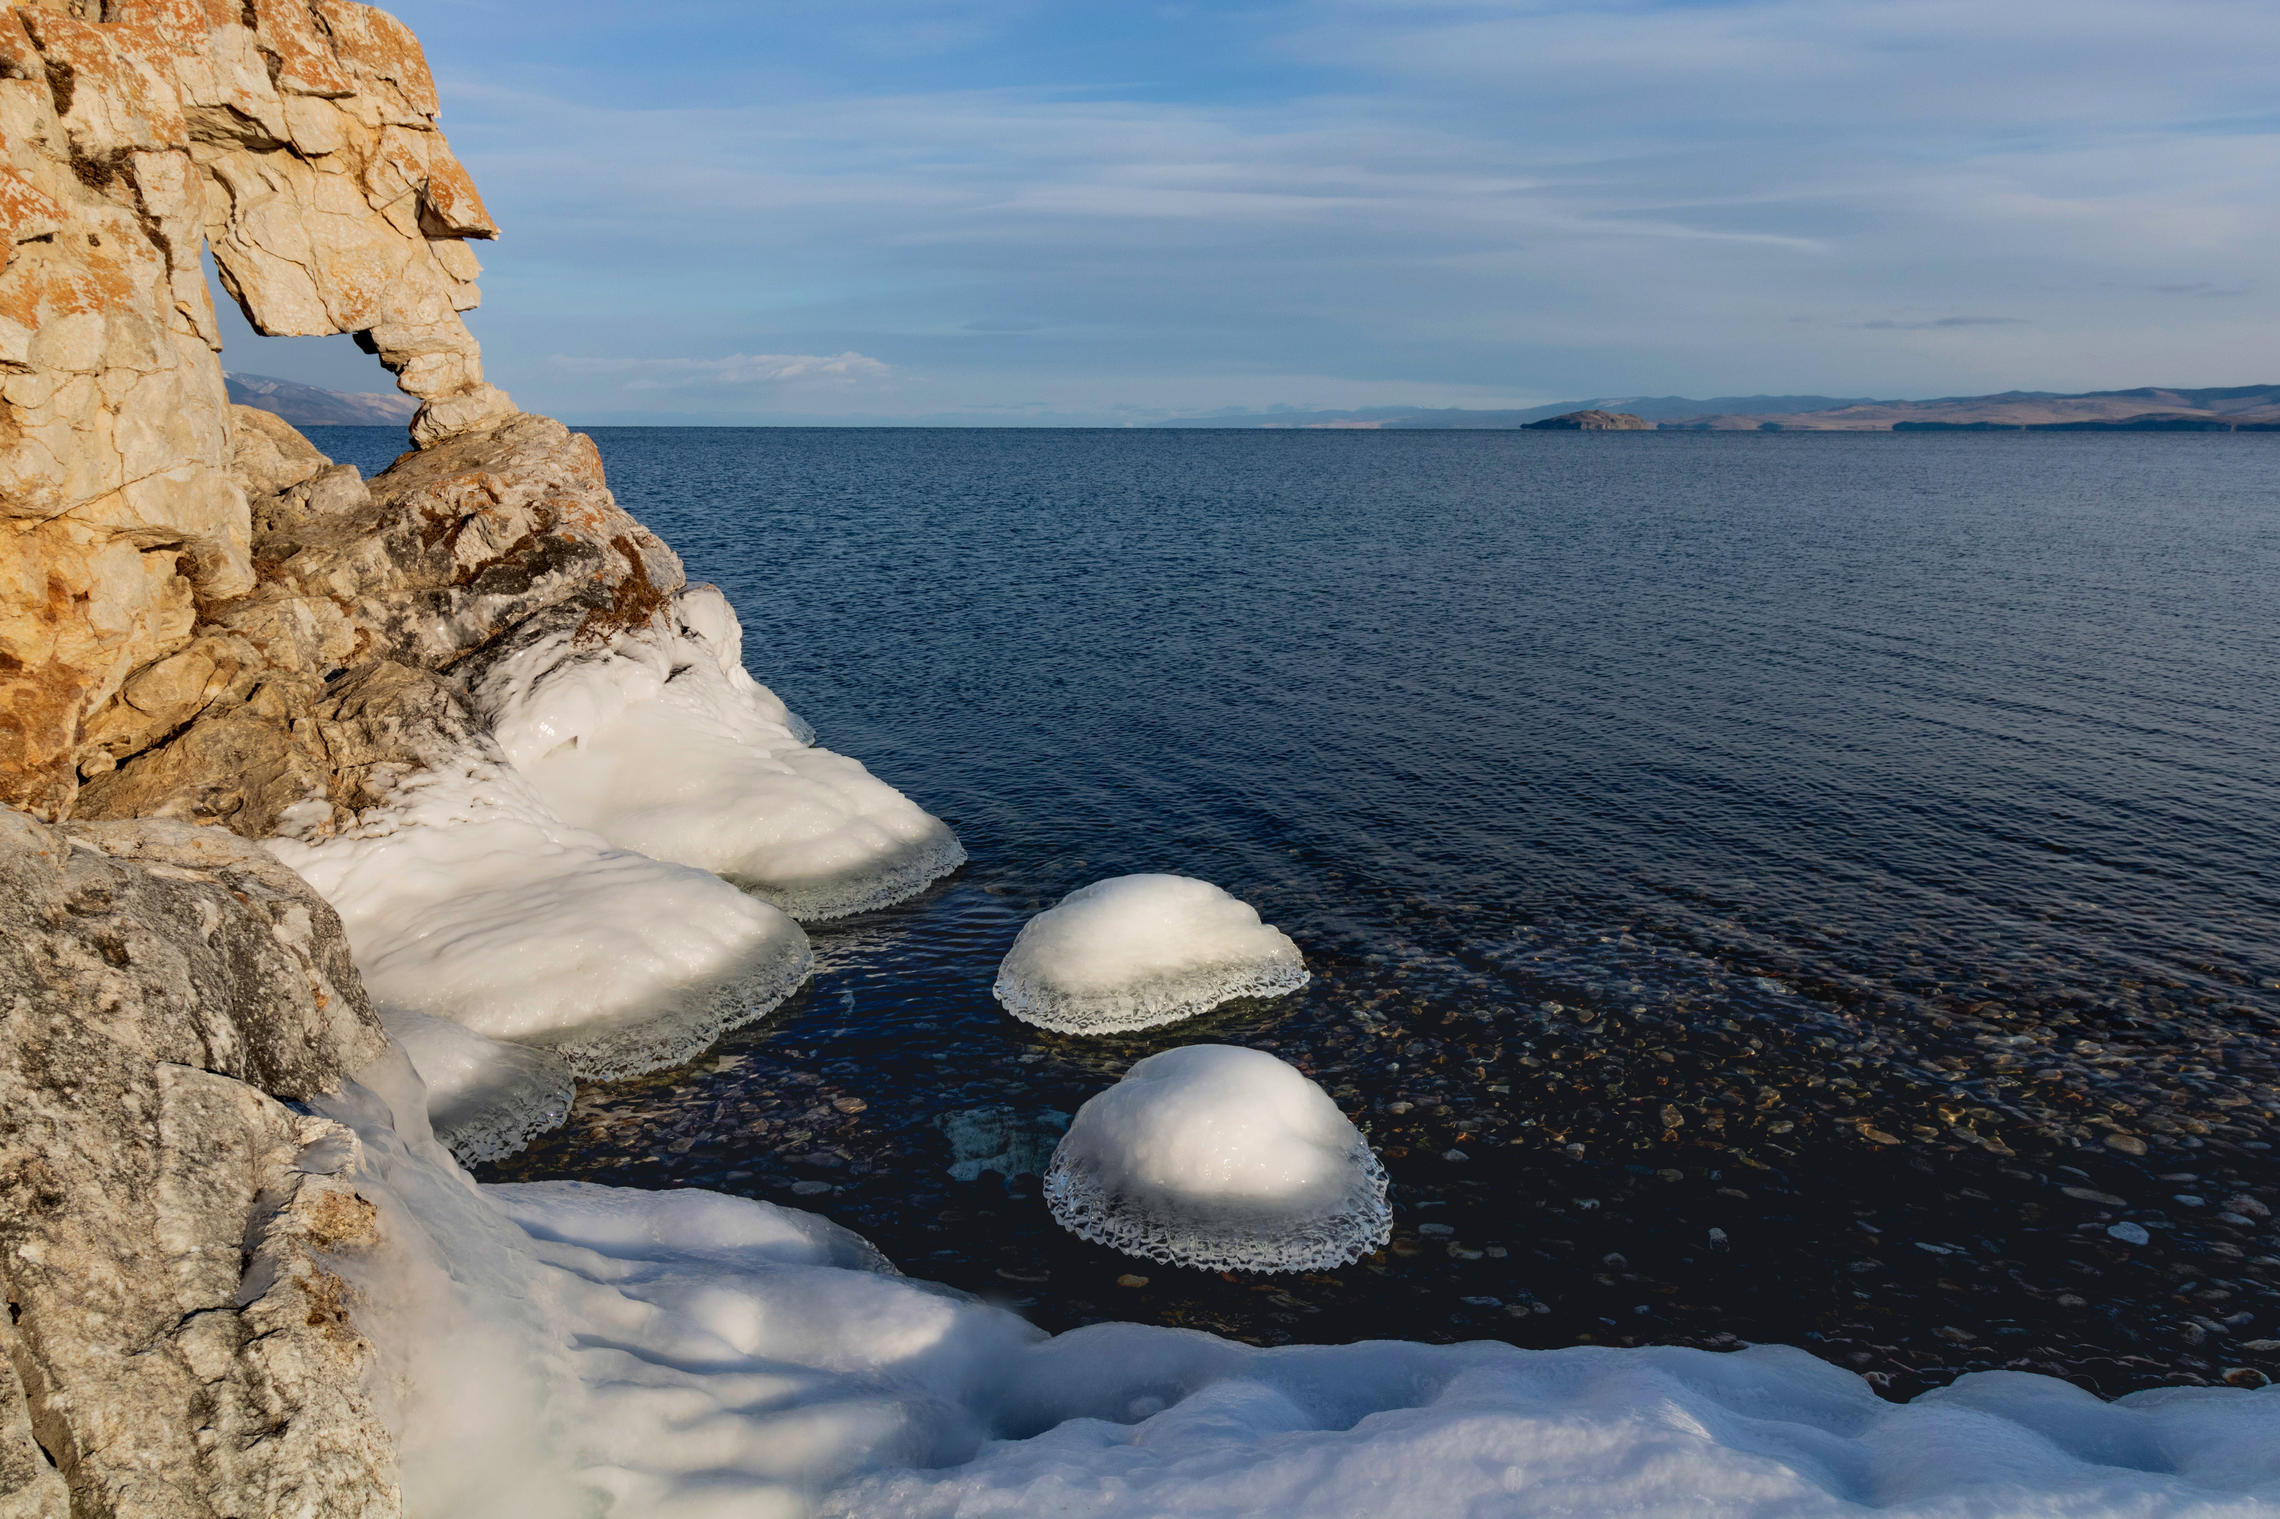 Дырка в скале и ледяные скатёрки на камнях. 